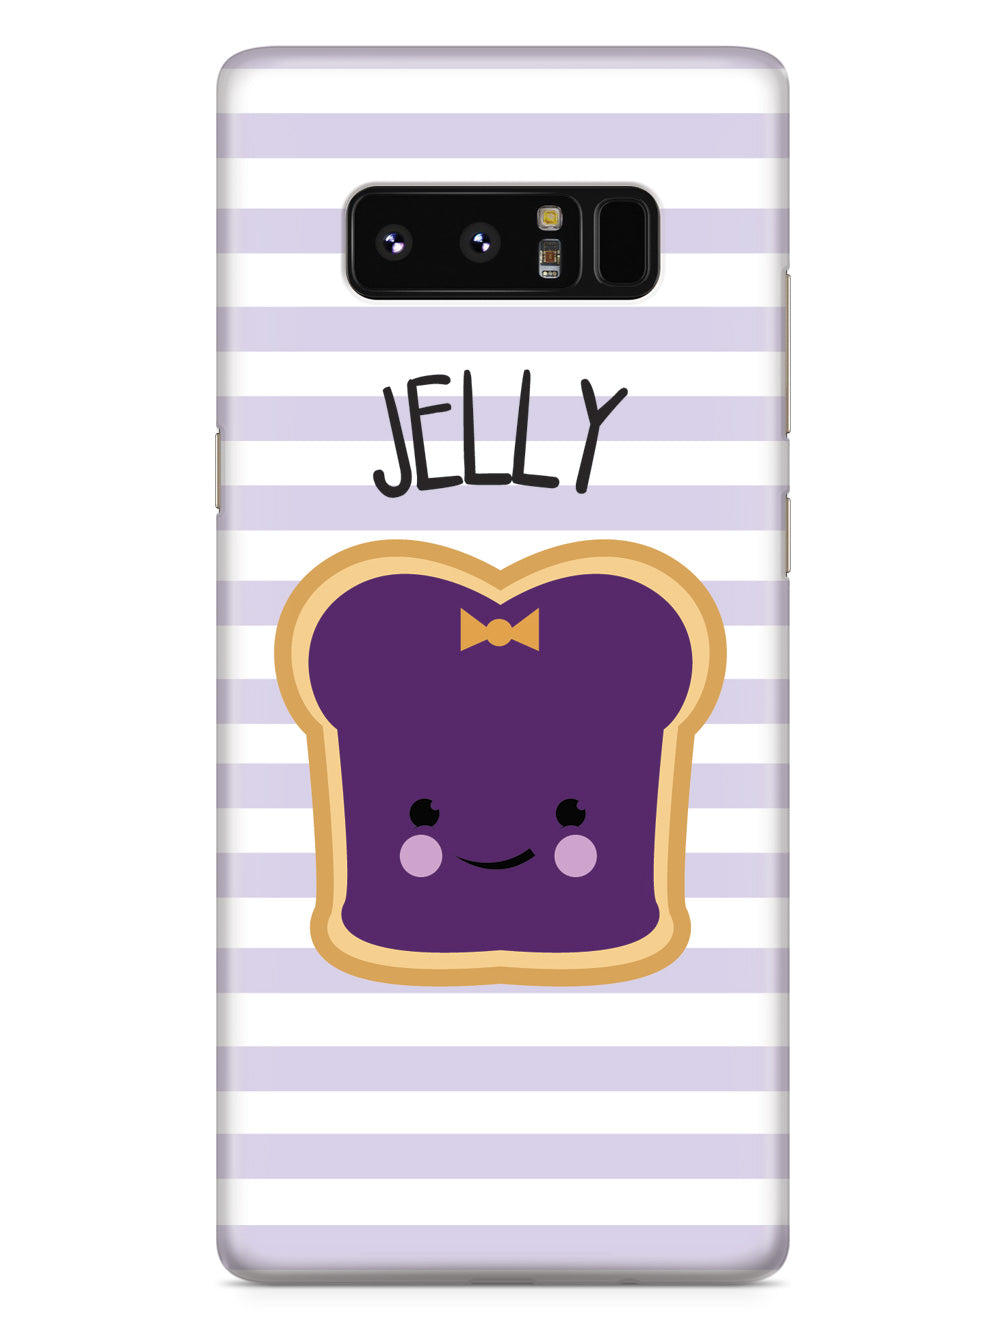 Peanut Butter & Jelly - Jelly Case